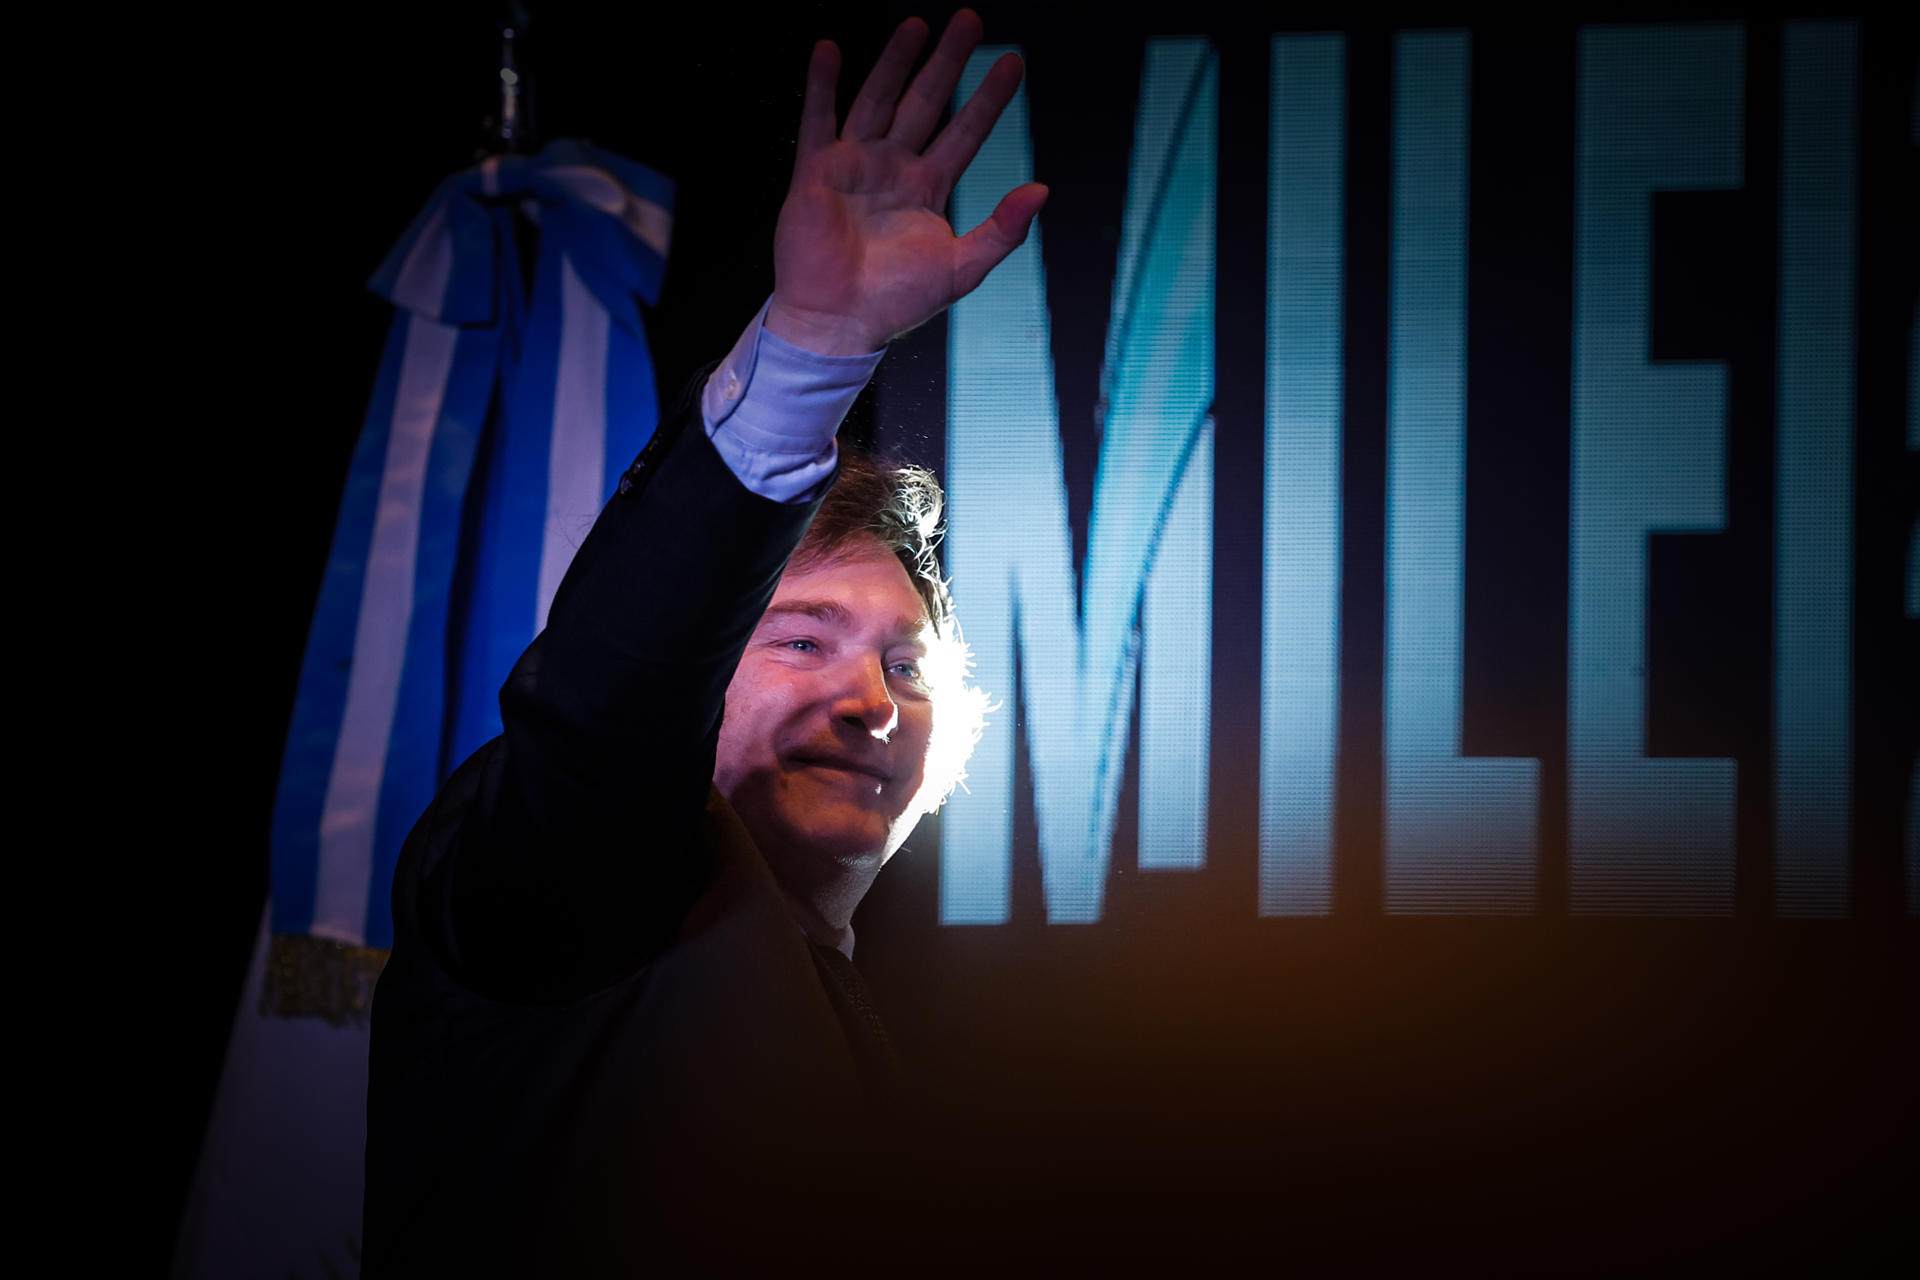 El nou president argentí Javier Milei, la guerra a Gaza i més: la volta al món en 15 fotos